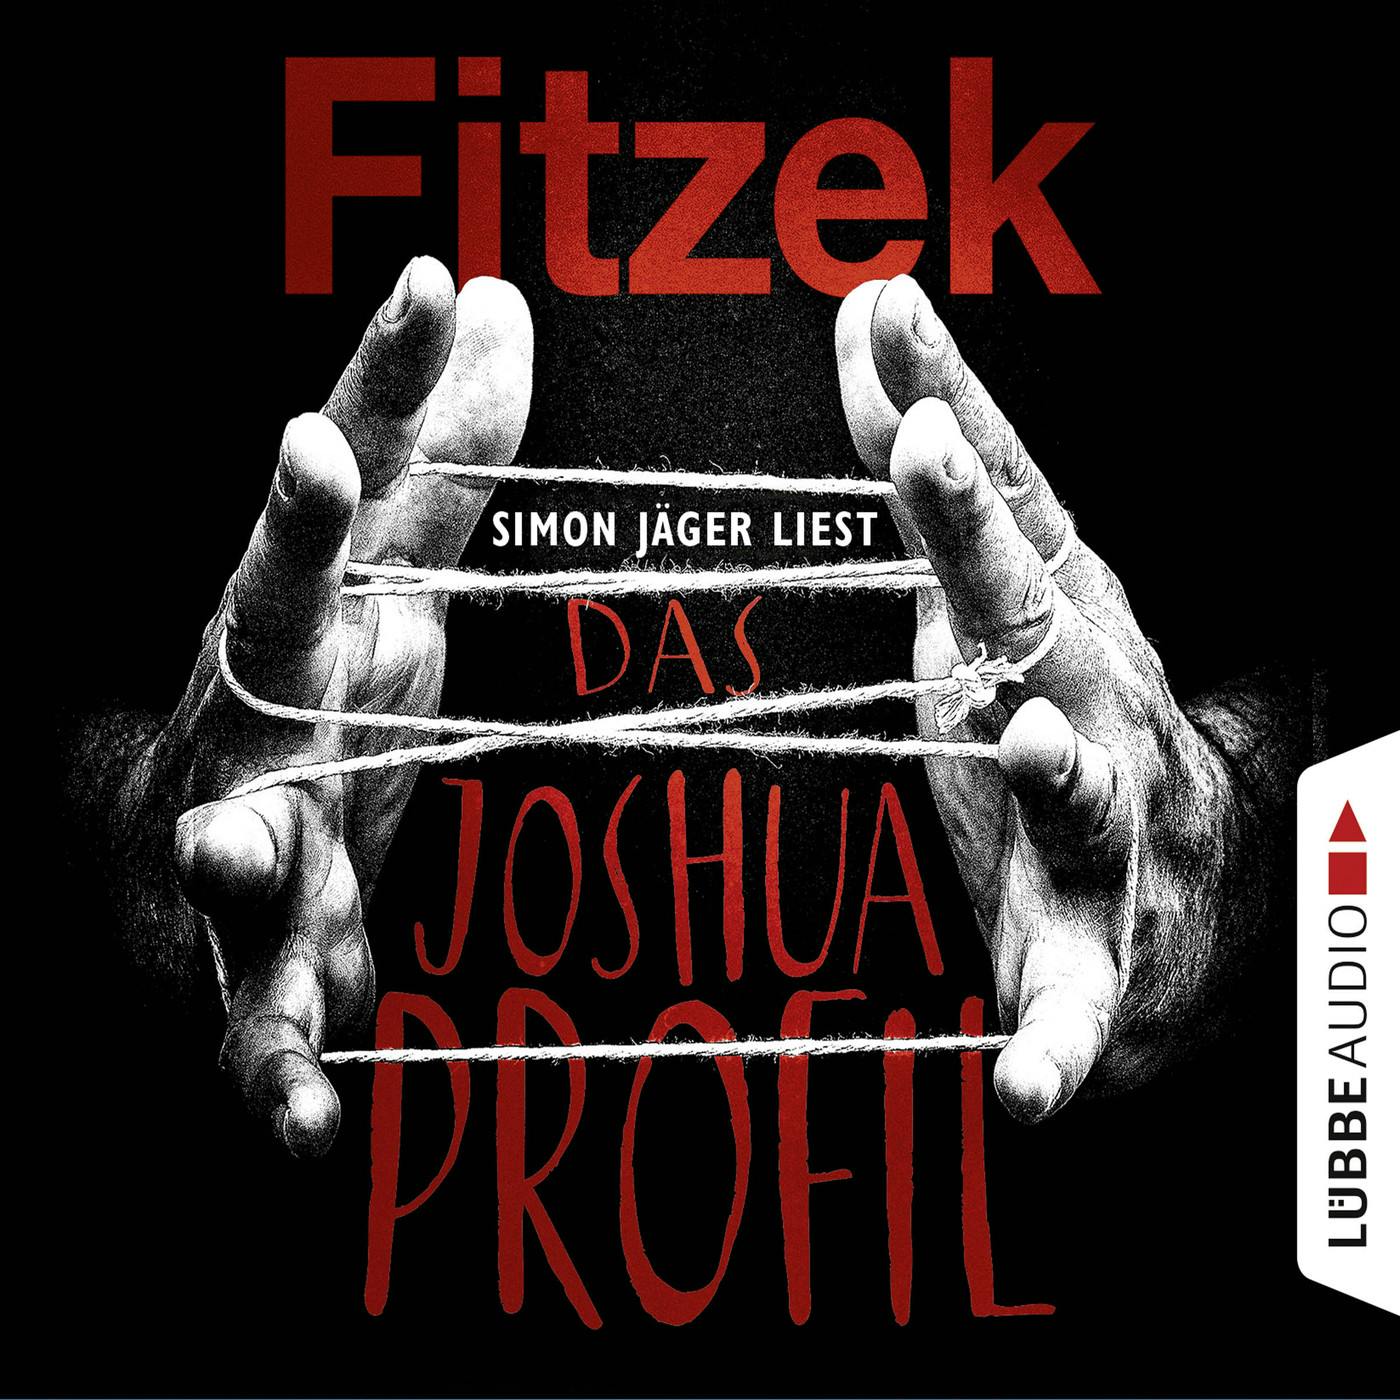 Das Joshua-Profil - Sebastian Fitzek